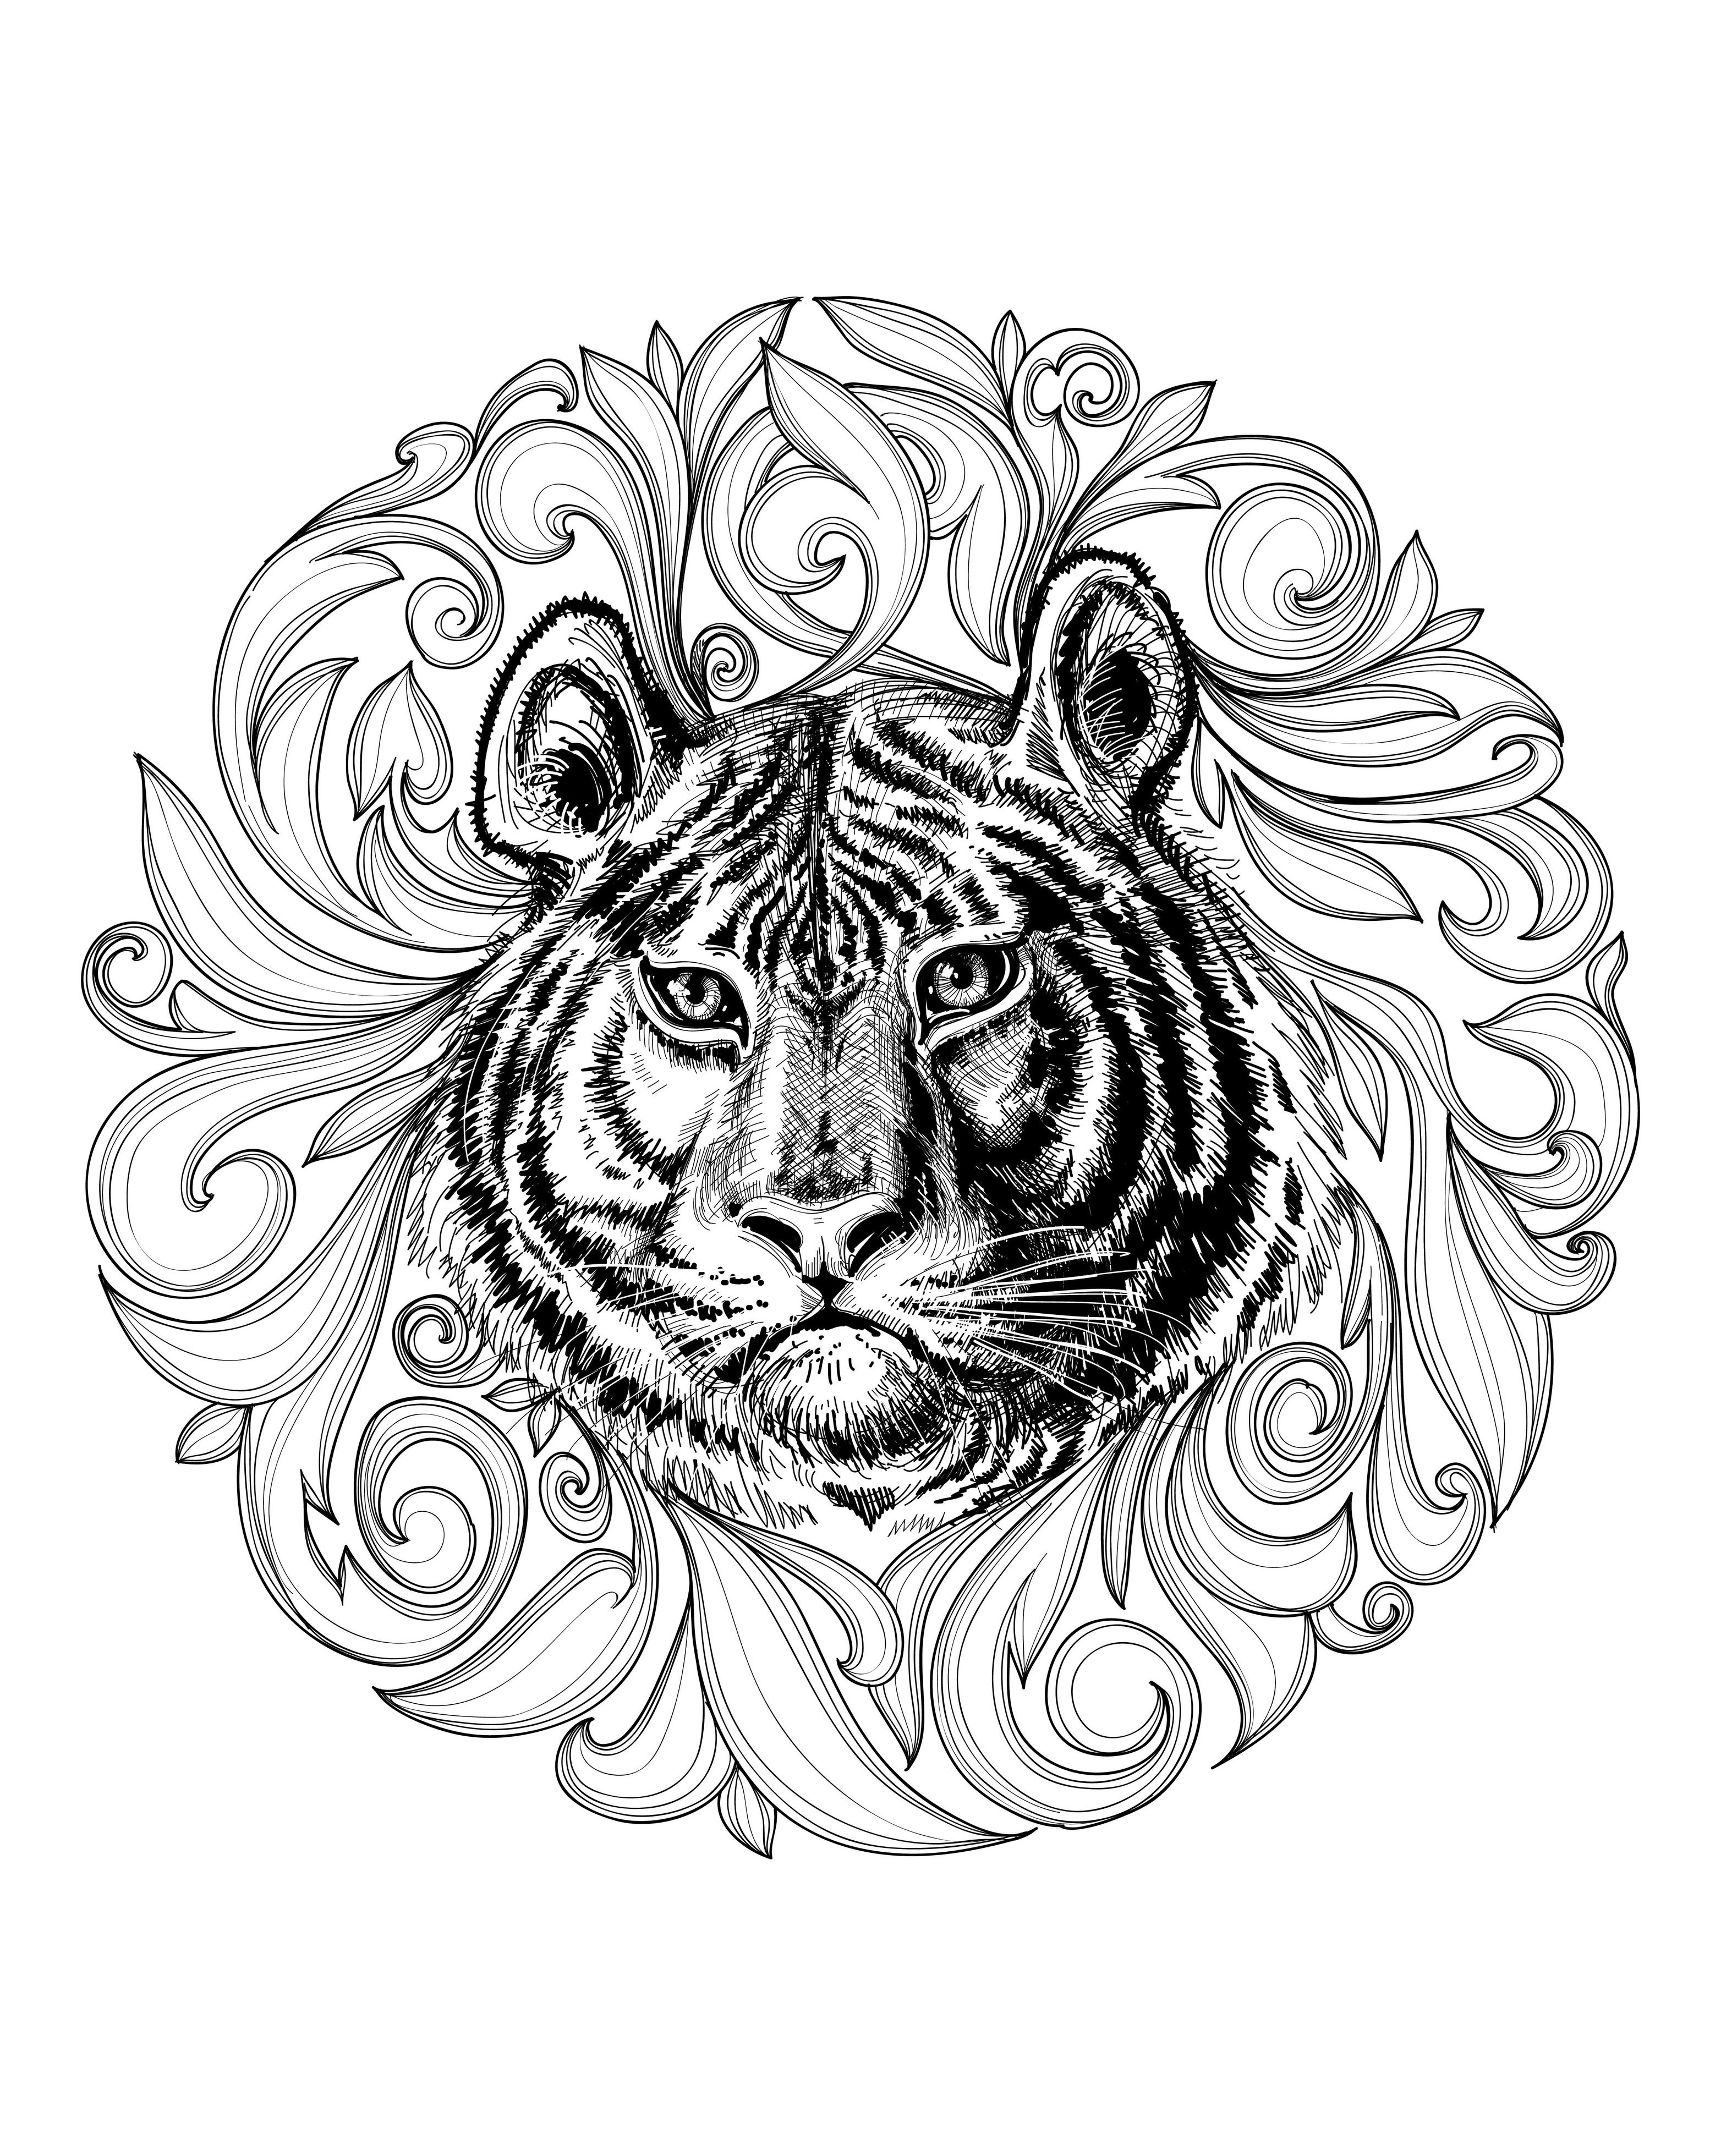 Un maestoso disegno di tigre evidenziato da un Mandala. Il contrasto tra la forza della tigre e la delicatezza di questo Mandala è semplicemente delizioso.